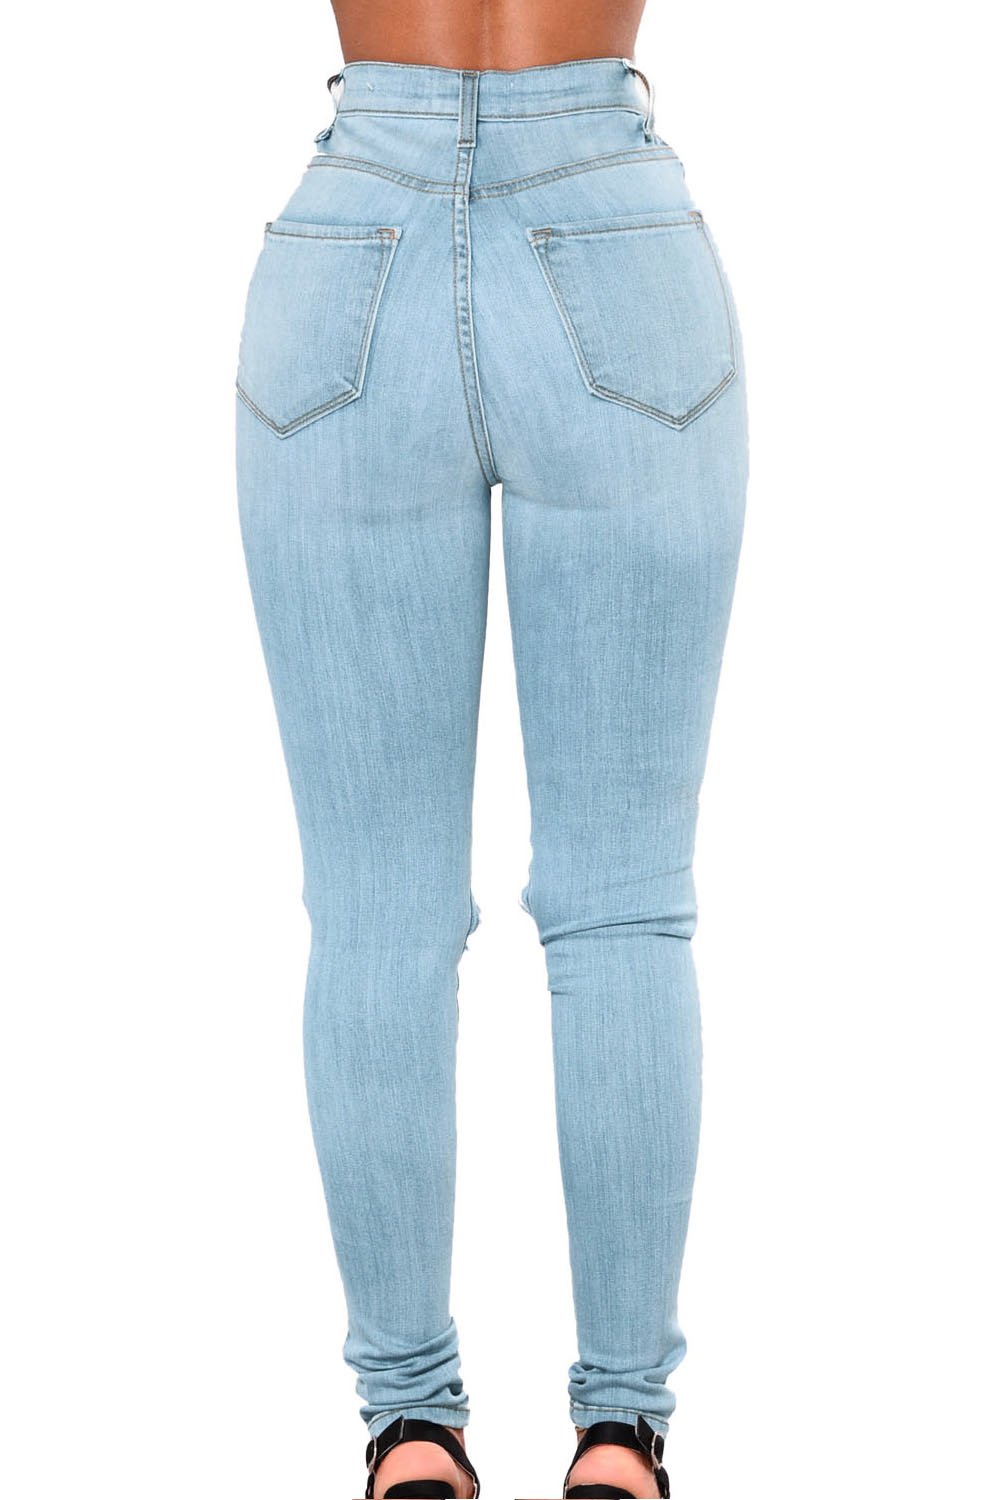 Вайлдберриз джинсы женские летние. Gloria Levis брюки. F5 джинсы женские ID: 123510 артикул: 19786.